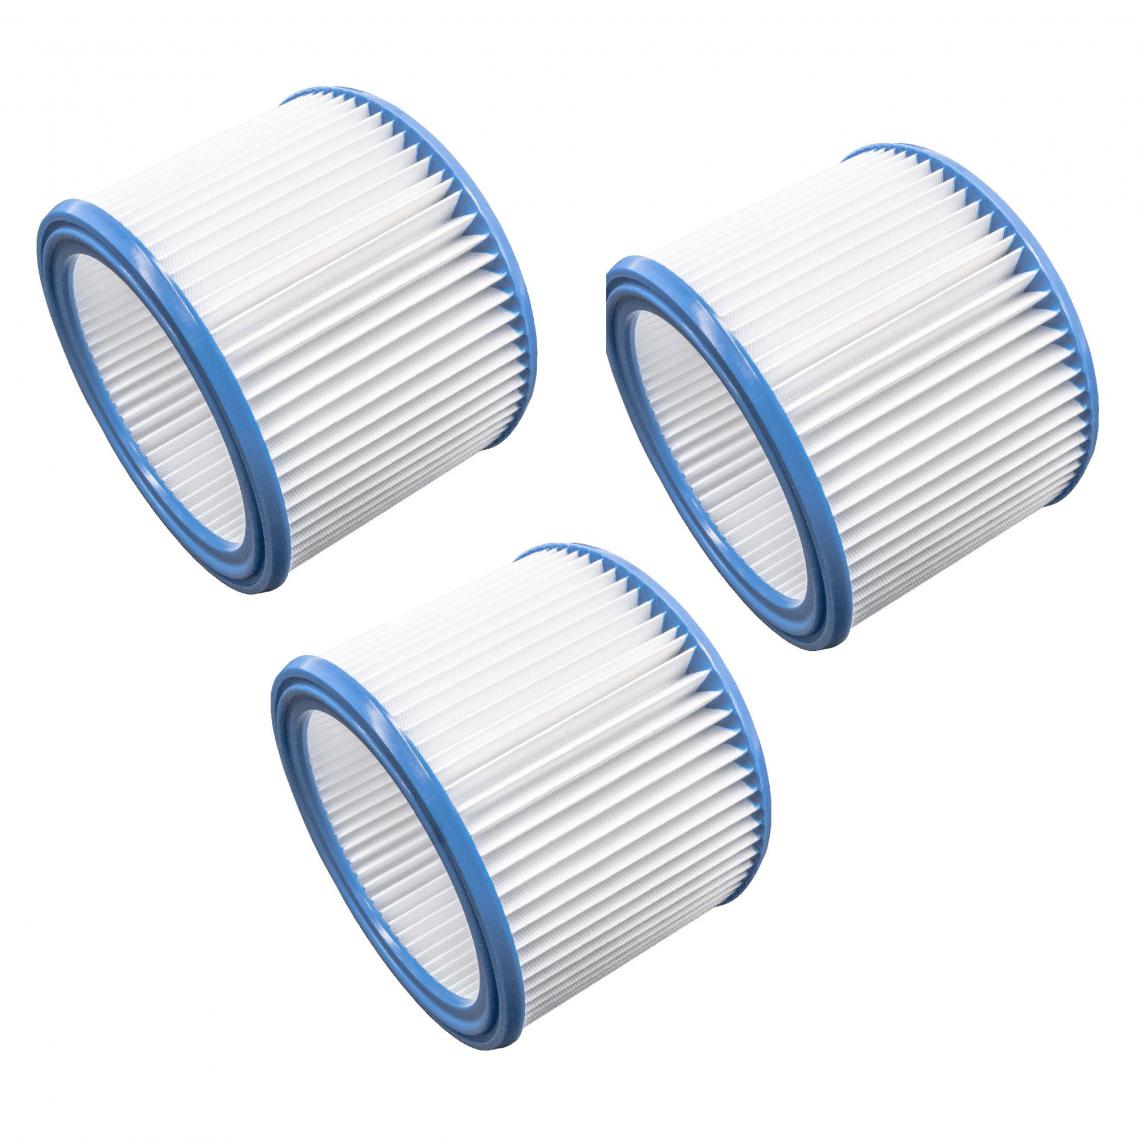 Vhbw - vhbw Set de filtres 3x Filtre plissé compatible avec Flex VC 21 L MC, VC 25 L MC, VC 26 L MC aspirateur à sec ou humide - Filtre à cartouche - Accessoire entretien des sols